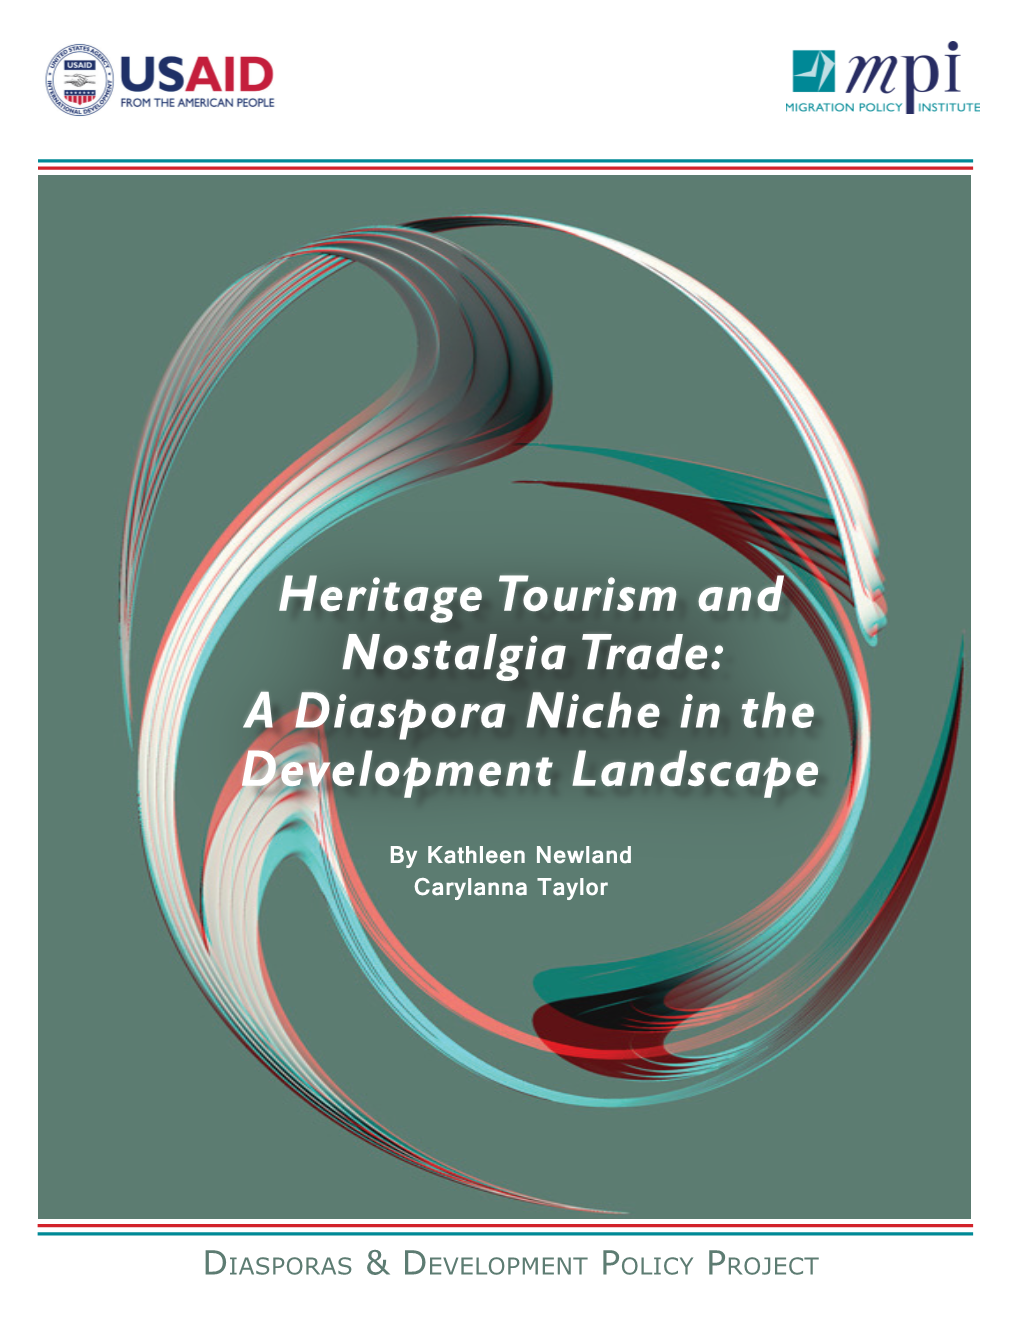 Heritage Tourism and Nostalgia Trade: a Diaspora Niche in the Development Landscape